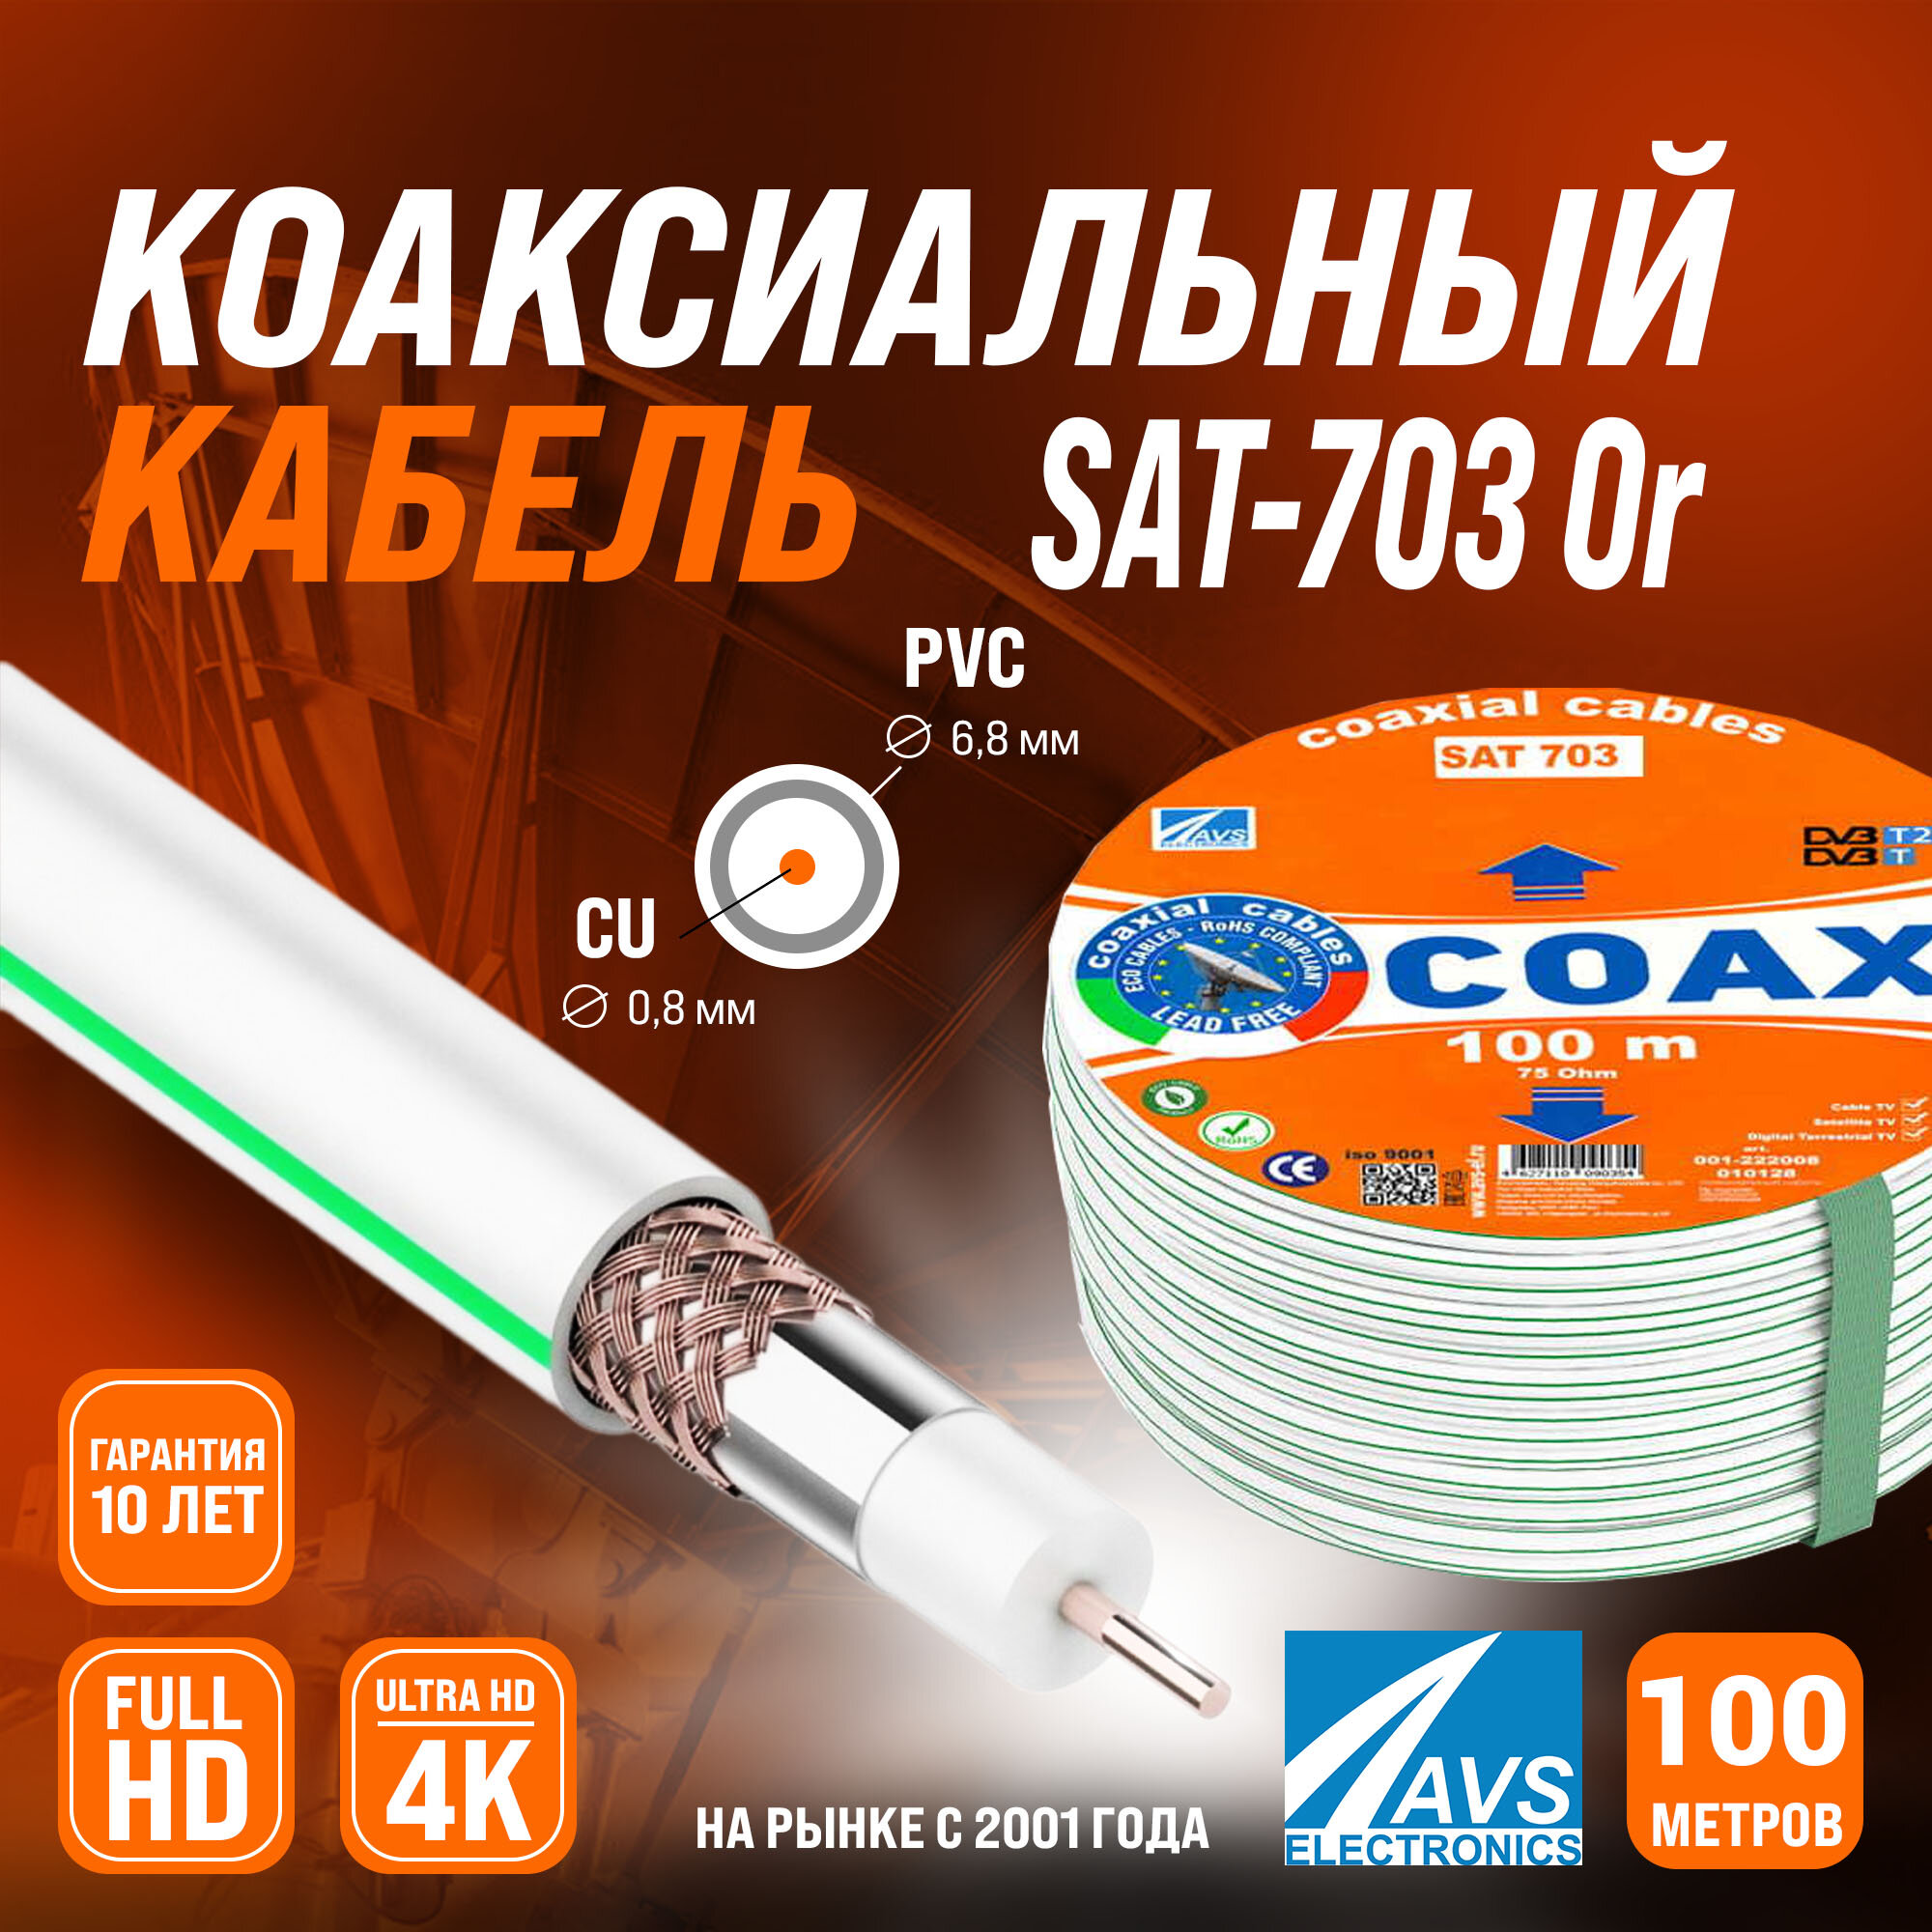 Медный телевизионный коаксиальный кабель 100 м SAT-703 Cu Or AVS Electronics антенный провод для спутниковой тарелки, цифрового, эфирного тв 100 метров 001-222008